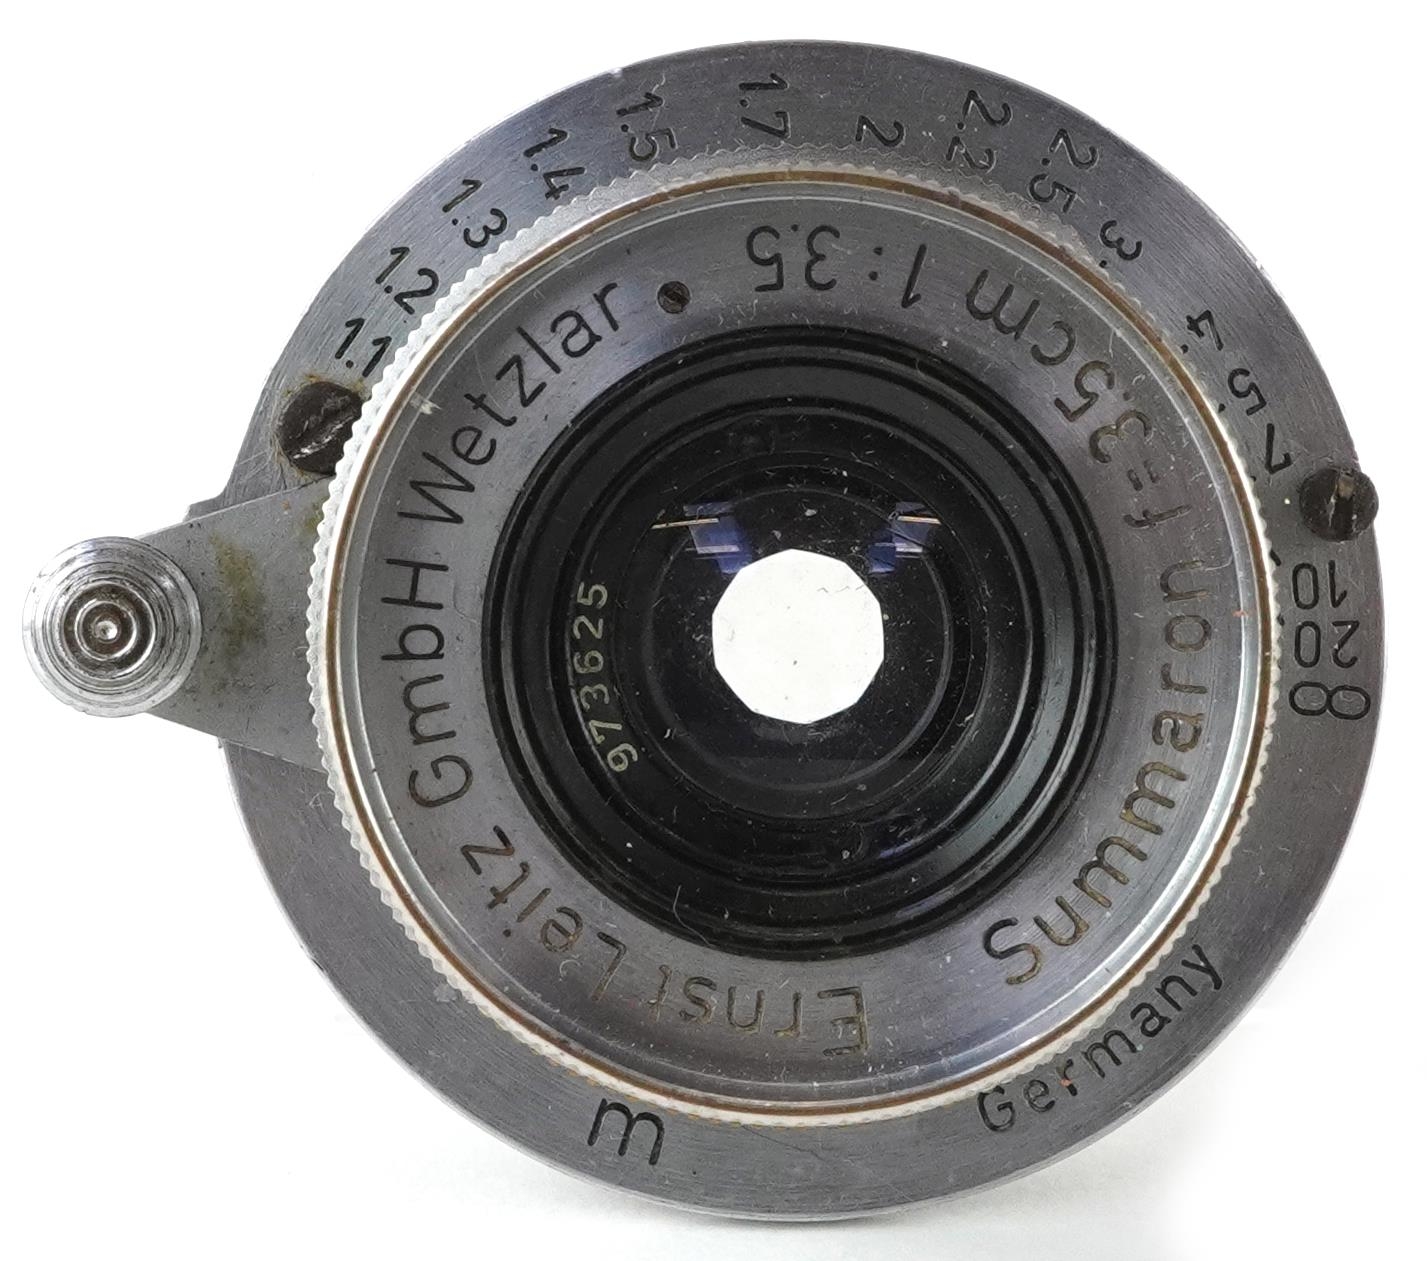 Leica Ernst Leitz Summaron F=3.5cm 1:3.5 camera lens, 5cm in diameter